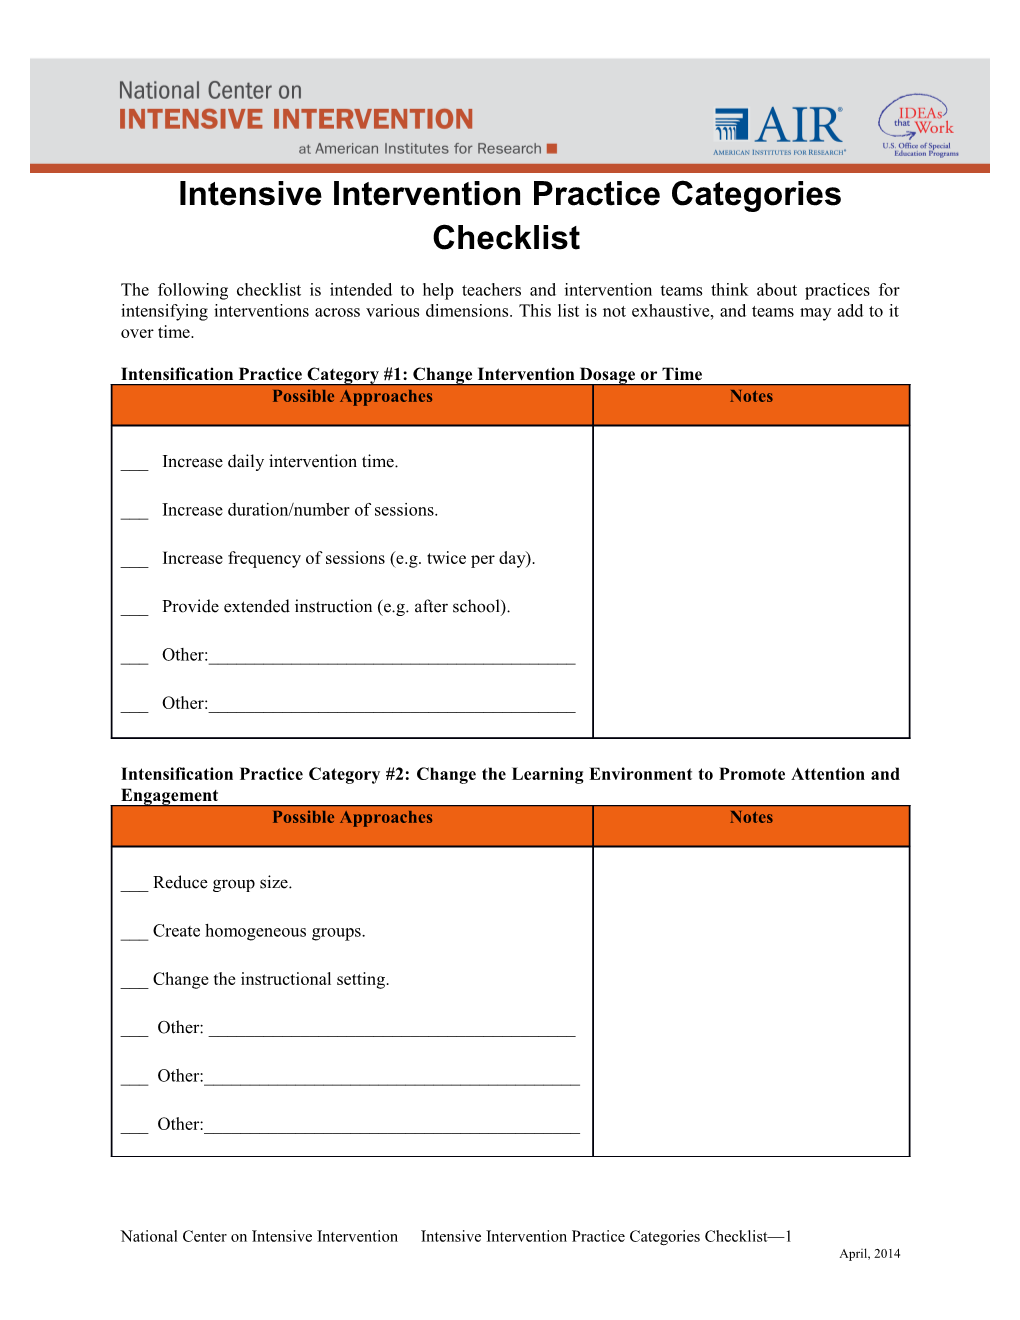 Intensive Intervention Practice Categories Checklist